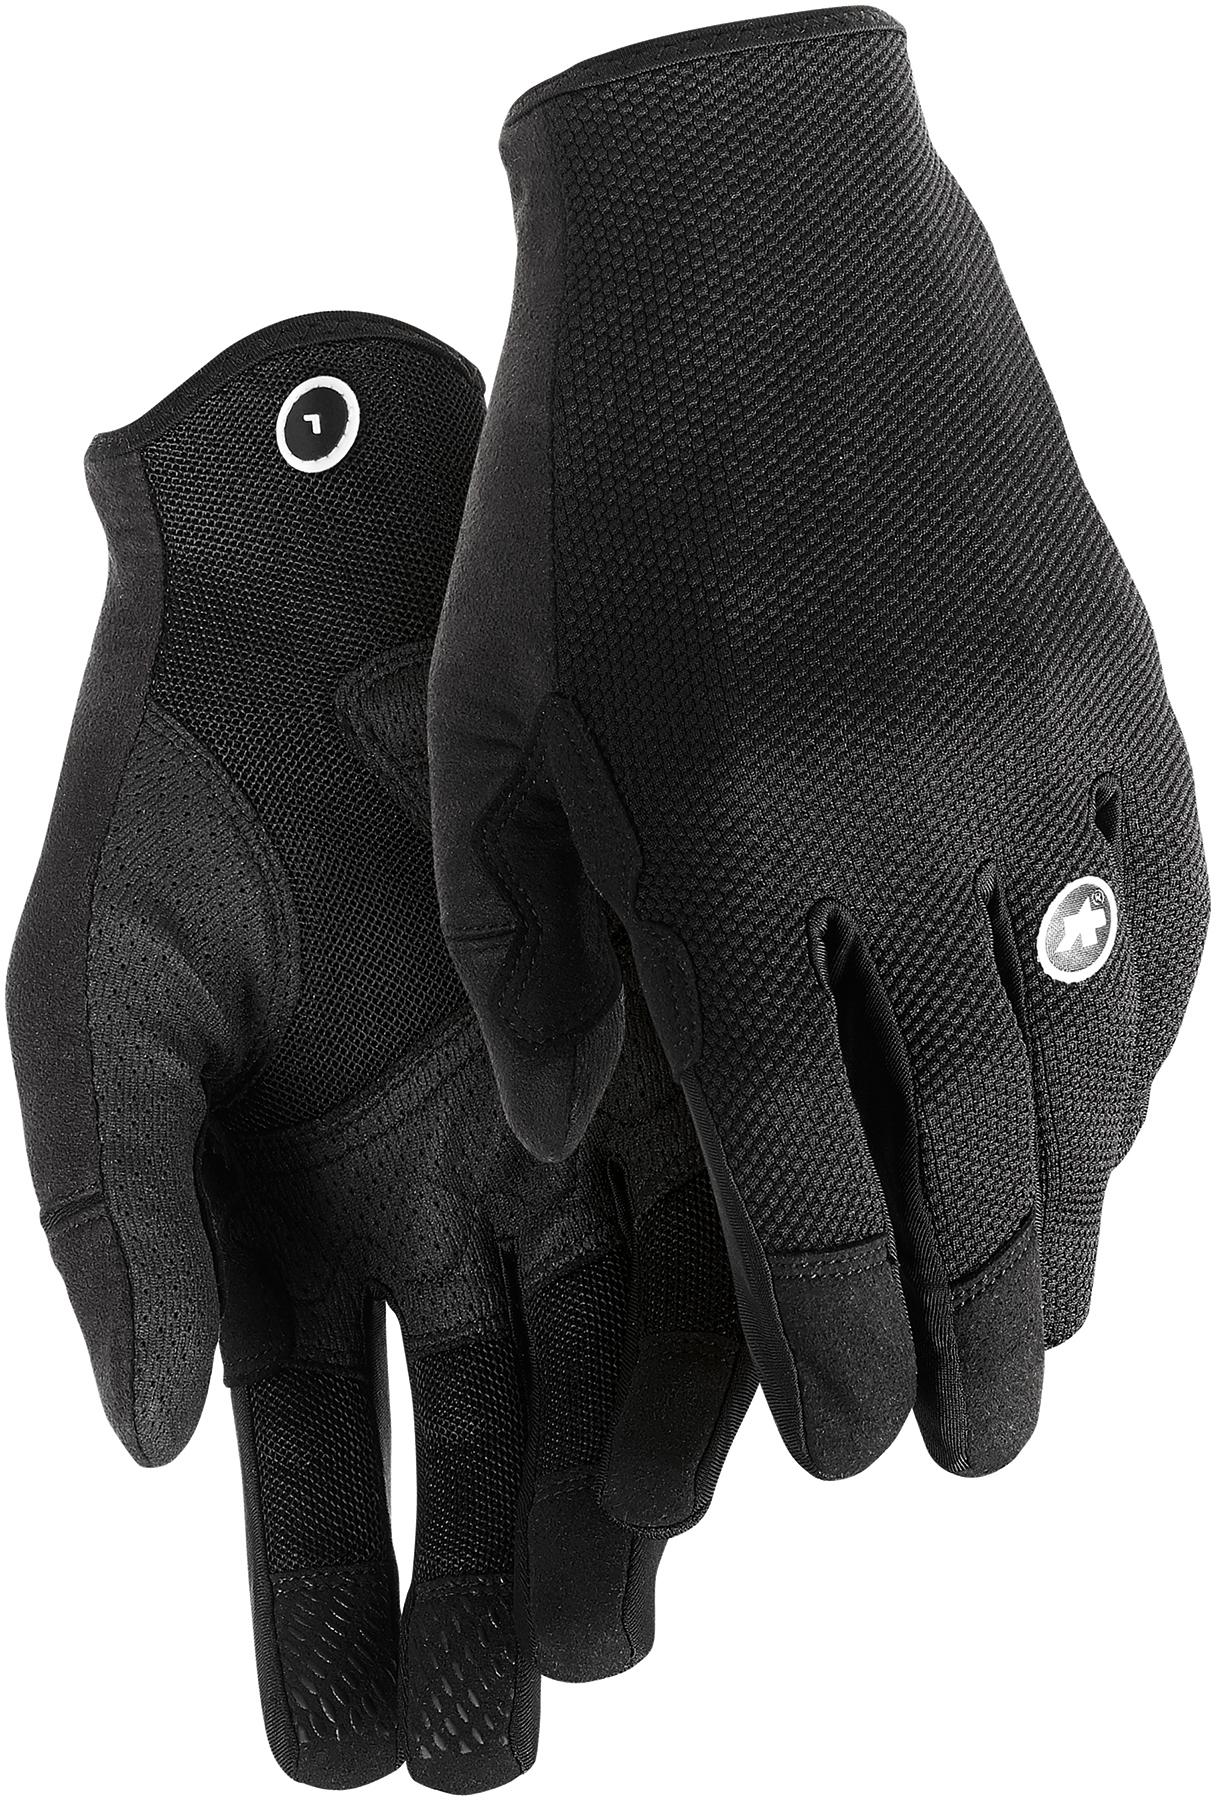 Assos Trail Ff Gloves  Black Series